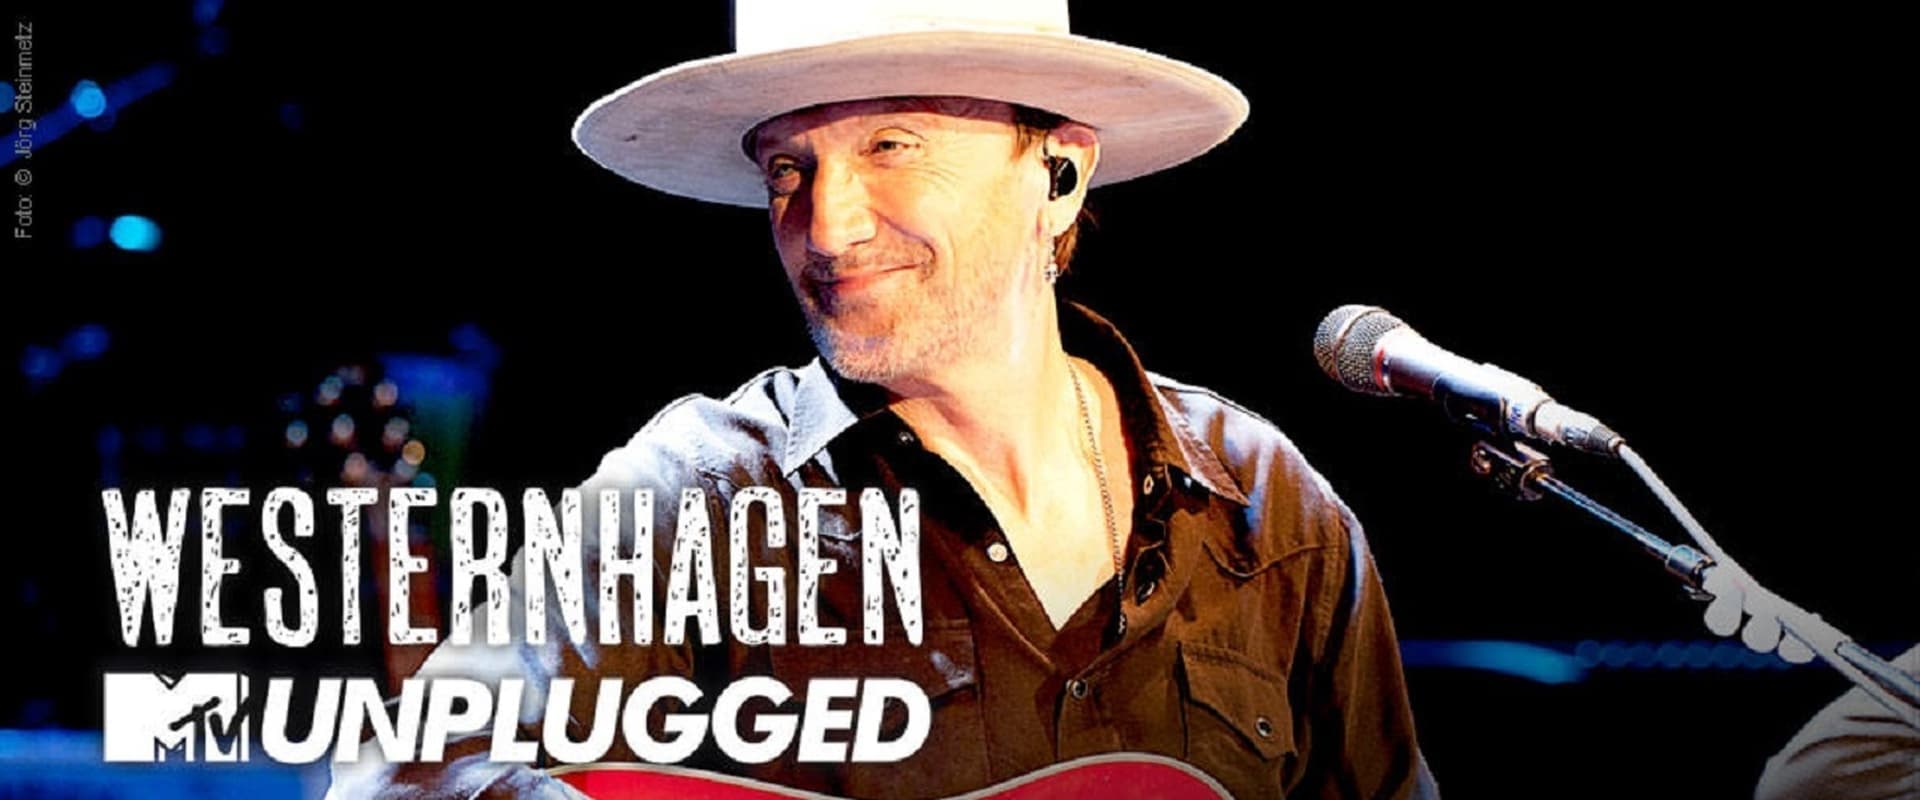 Westernhagen - MTV Unplugged